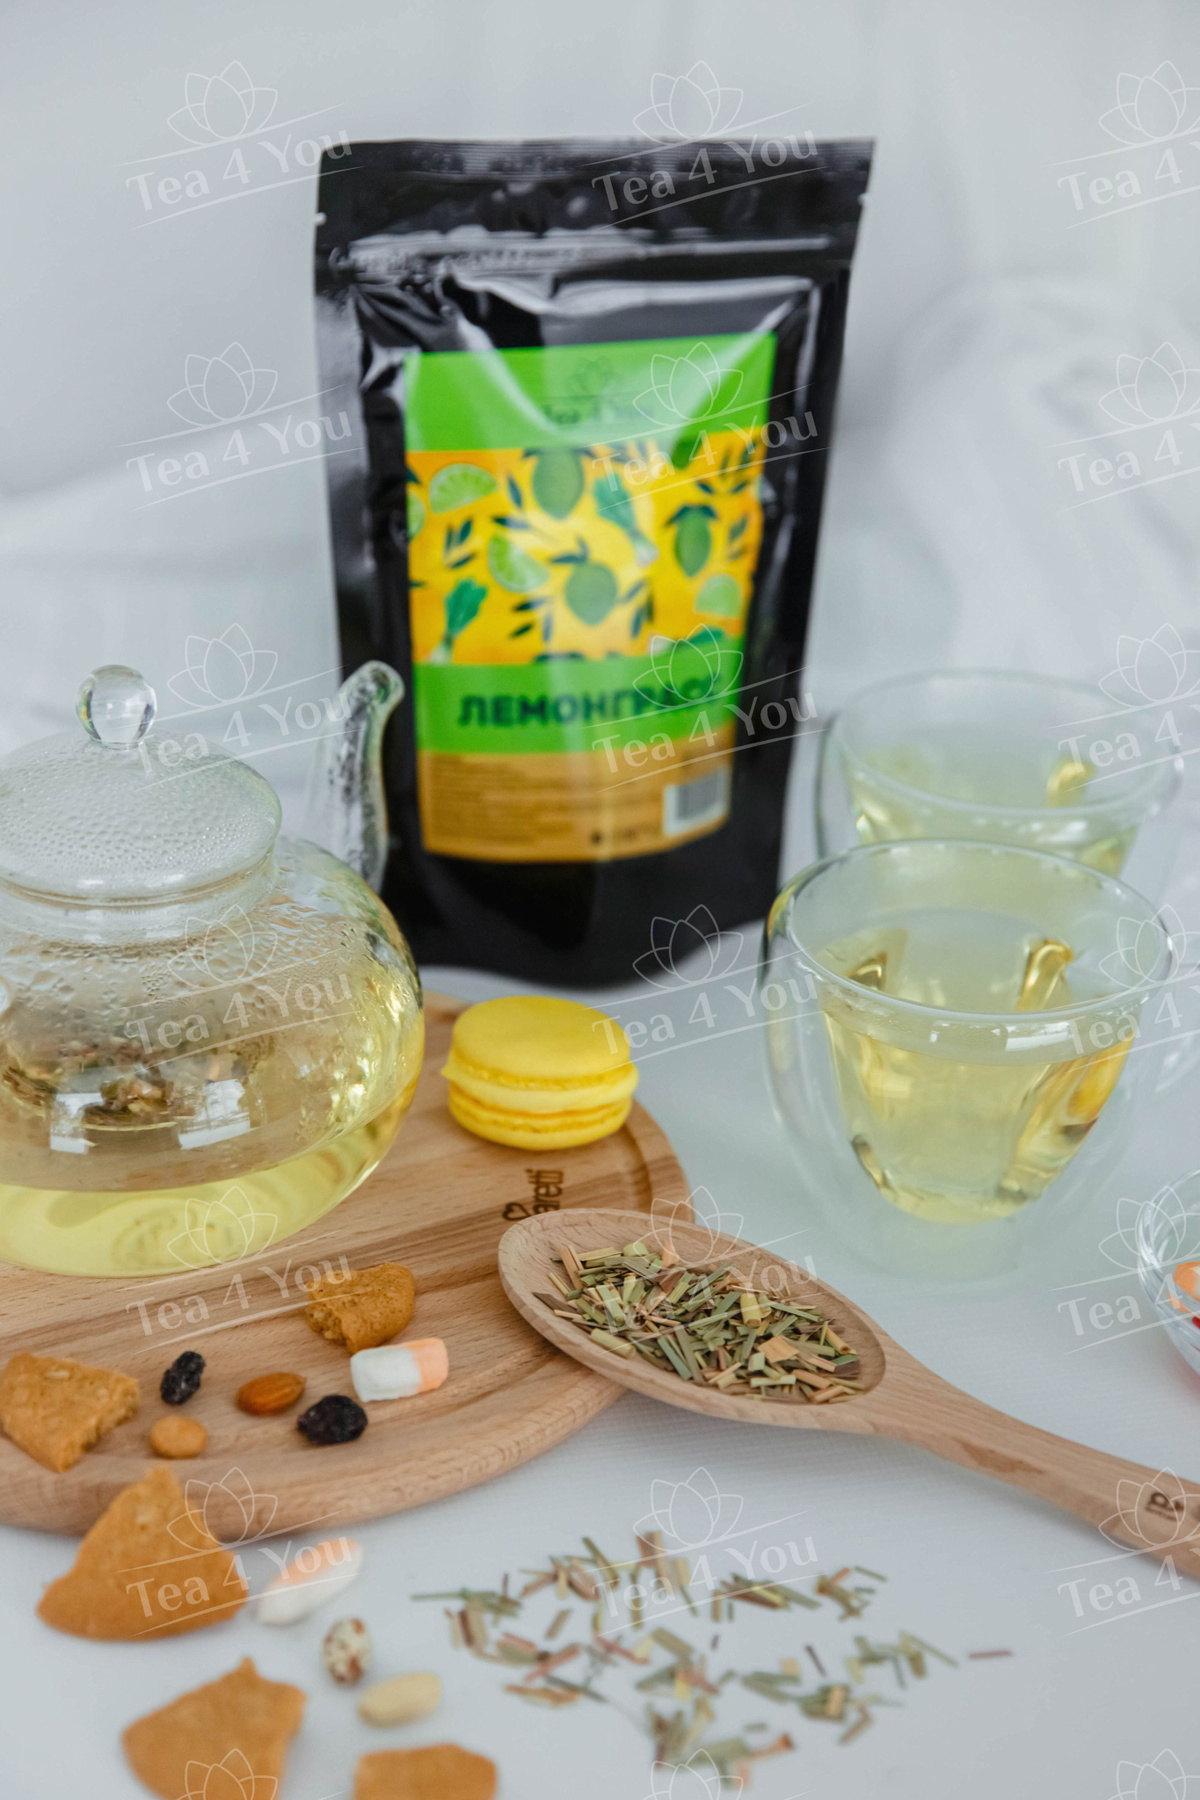 Лемонграсс из Шри-Ланки травяной чай Premium, 100г